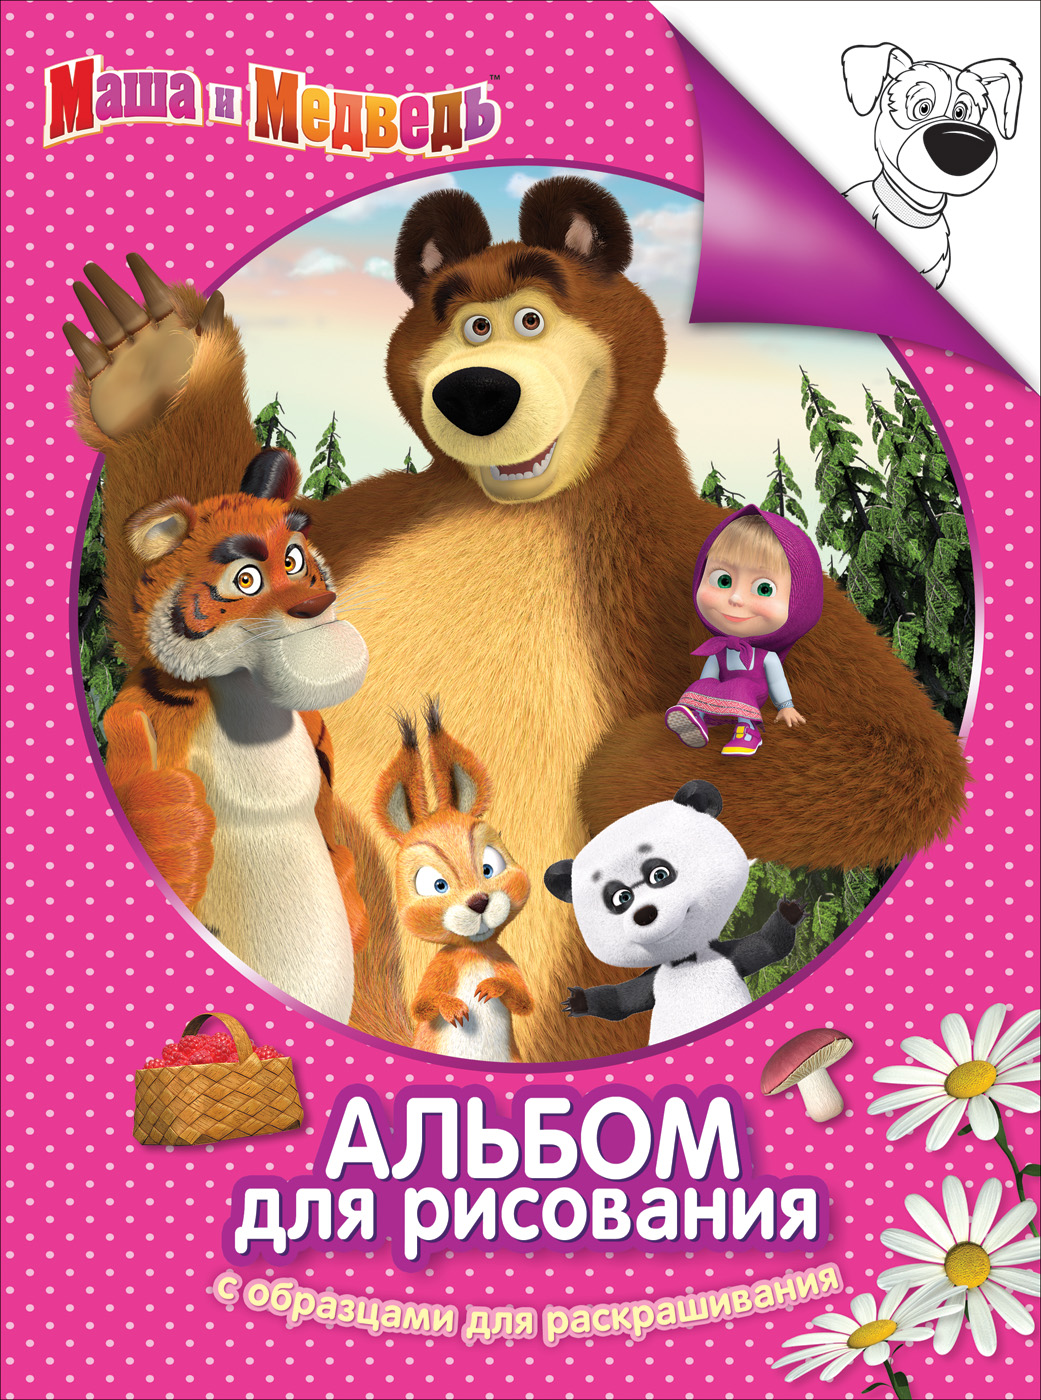 Альбом-раскраска 30915 Маша и Медведь розов Росмэн - Томск 